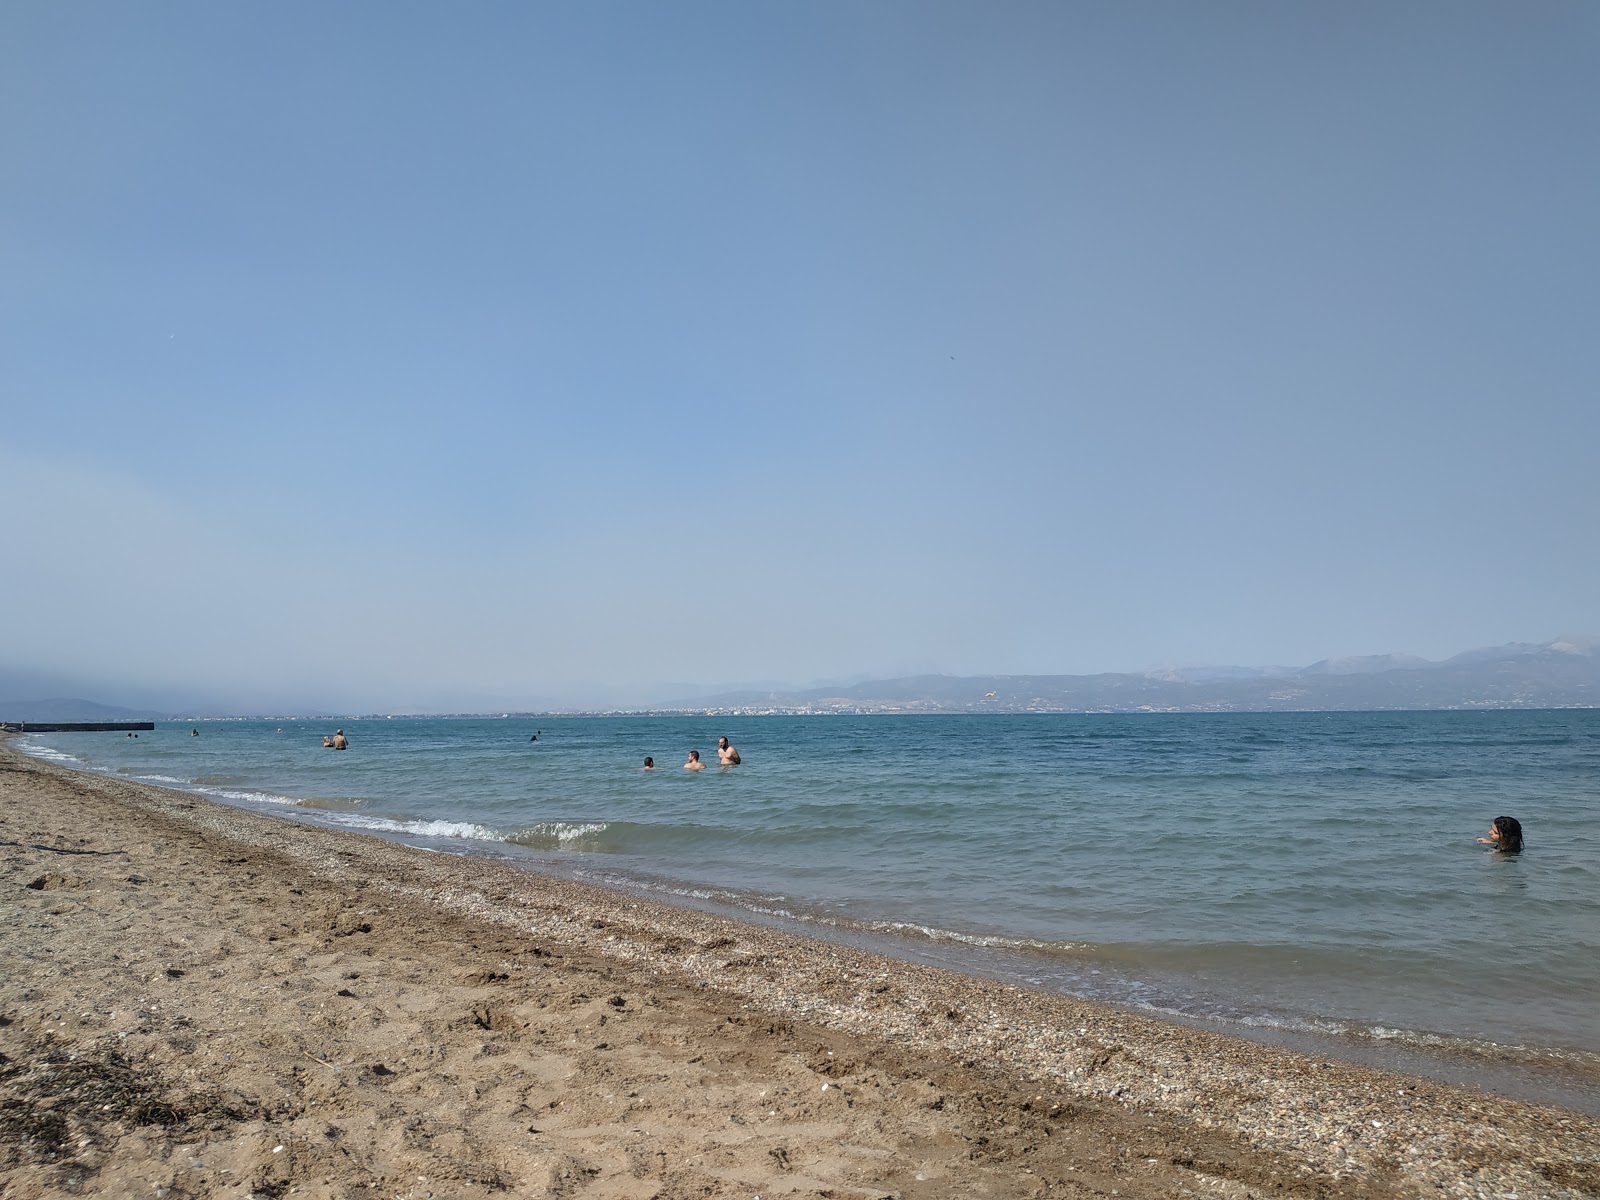 Fotografie cu Avlidas beach cu o suprafață de nisip negru și pietricel